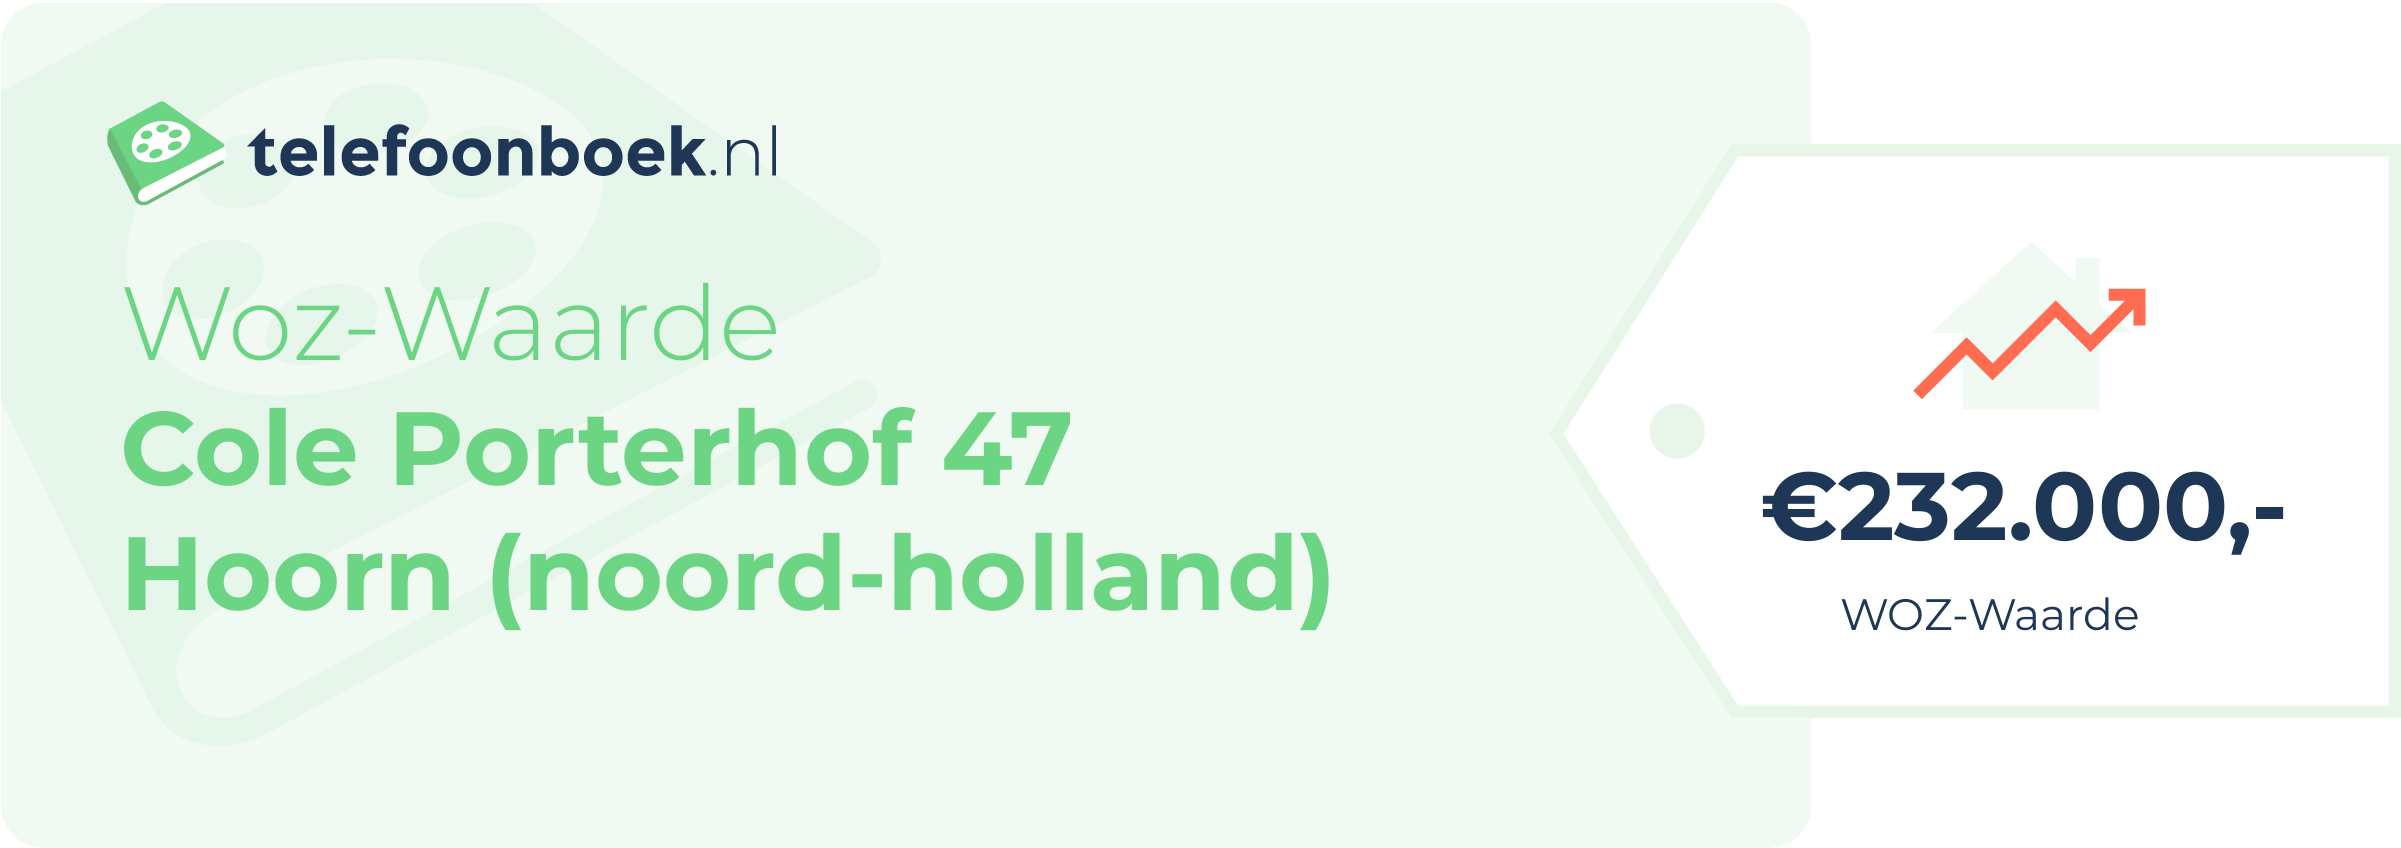 WOZ-waarde Cole Porterhof 47 Hoorn (Noord-Holland)